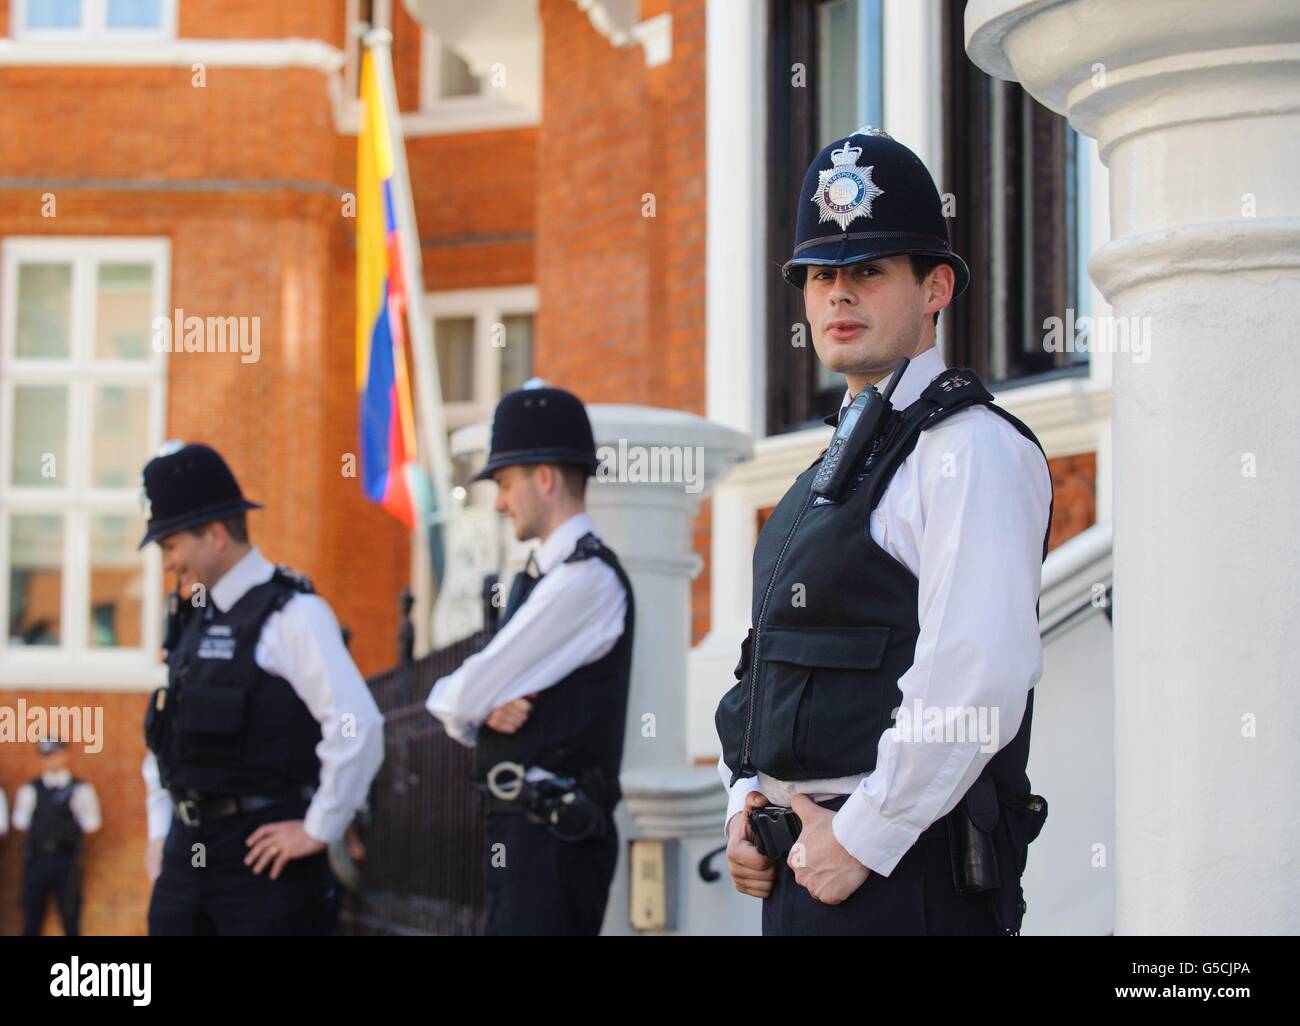 Polizeibeamte vor der Botschaft Ecuadors in Knightsbridge im Zentrum von London, wo Wikileaks-Gründer Julian Assange Asyl beantragt, um eine Auslieferung nach Schweden zu vermeiden Stockfoto